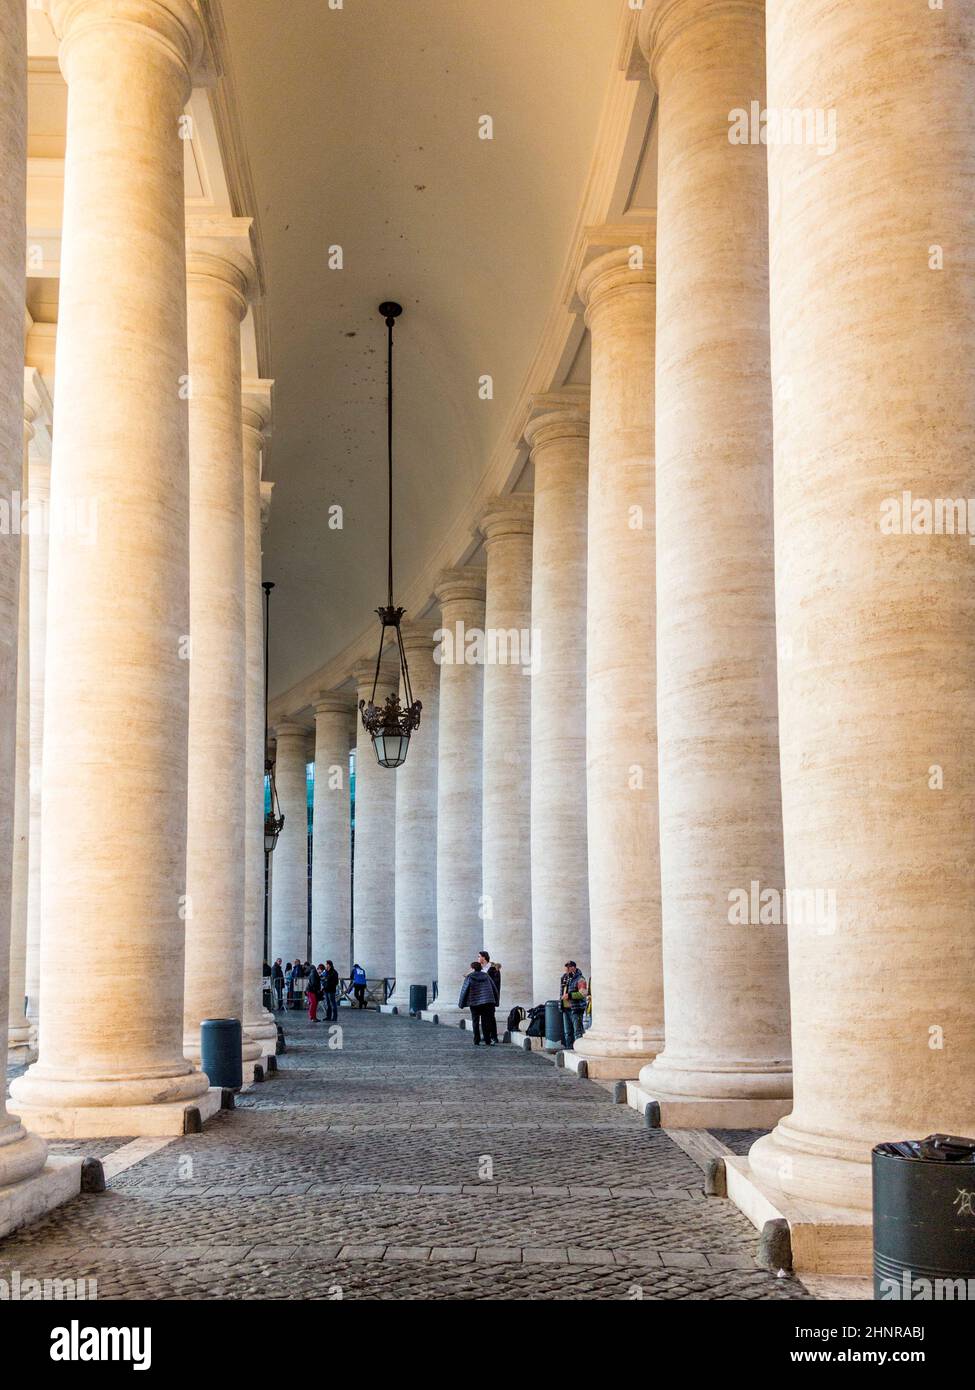 Touristes à pied de la place Saint-Pierre au Vatican Banque D'Images